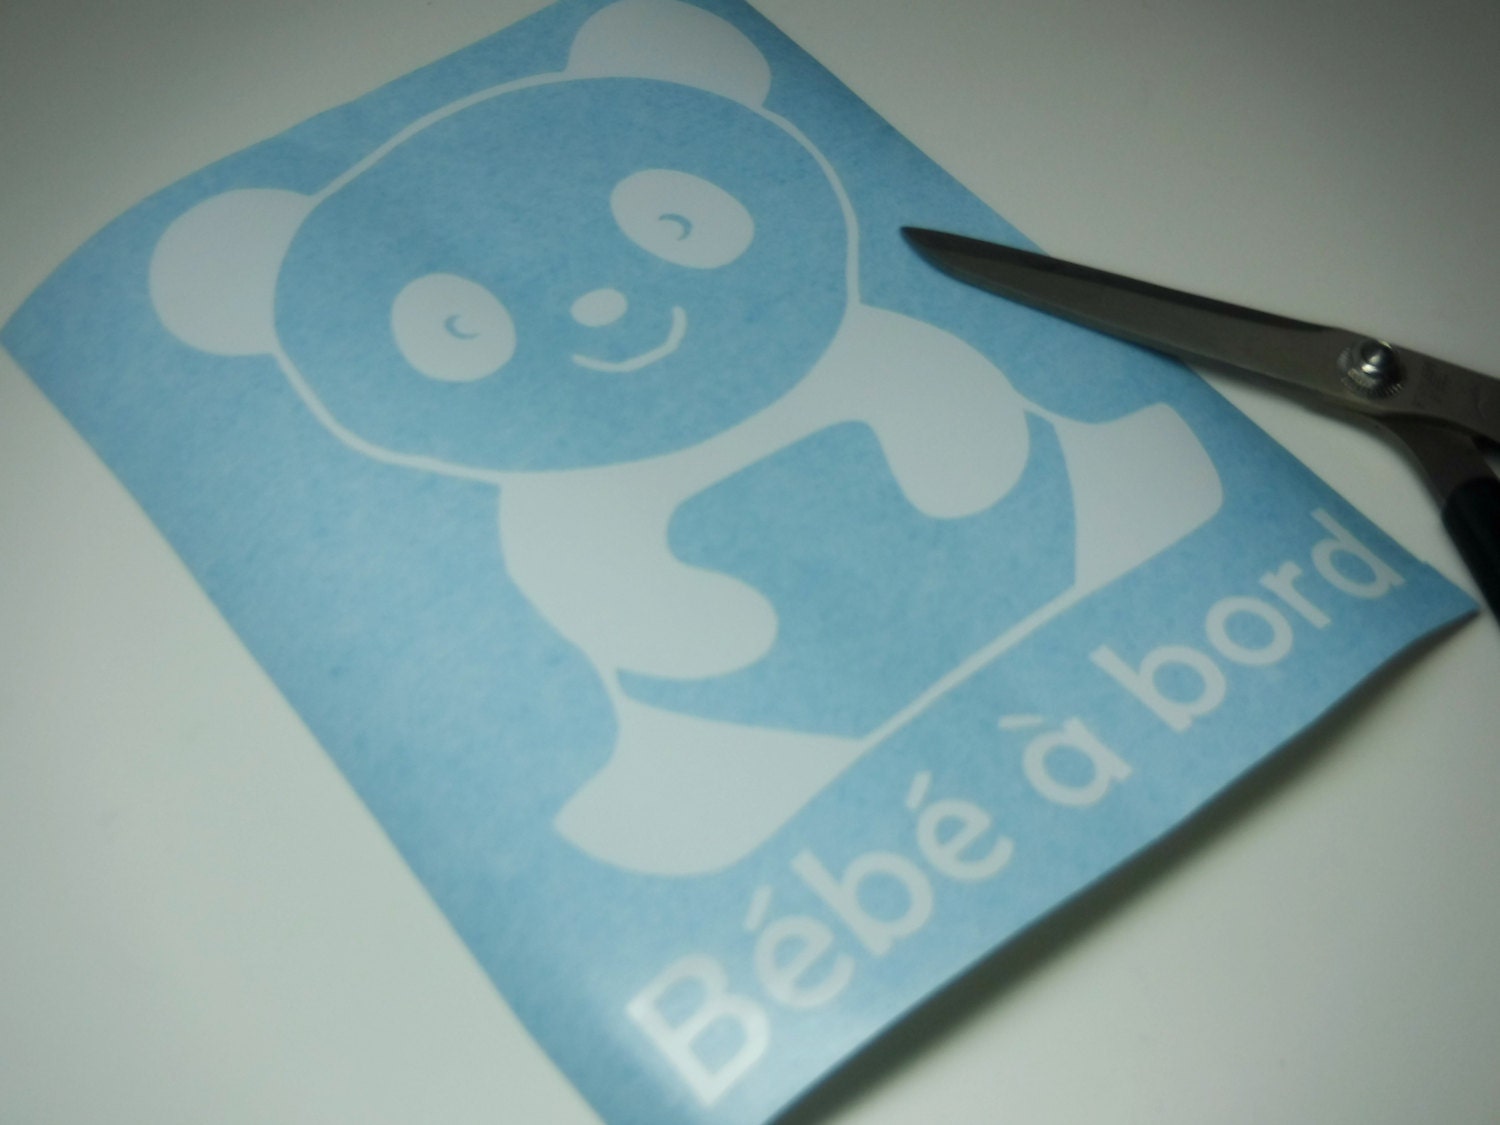 Autocollant Bébé à Bord Panda Stickers pour voiture - ref 050119b -  Stickers Autocollants personnalisés